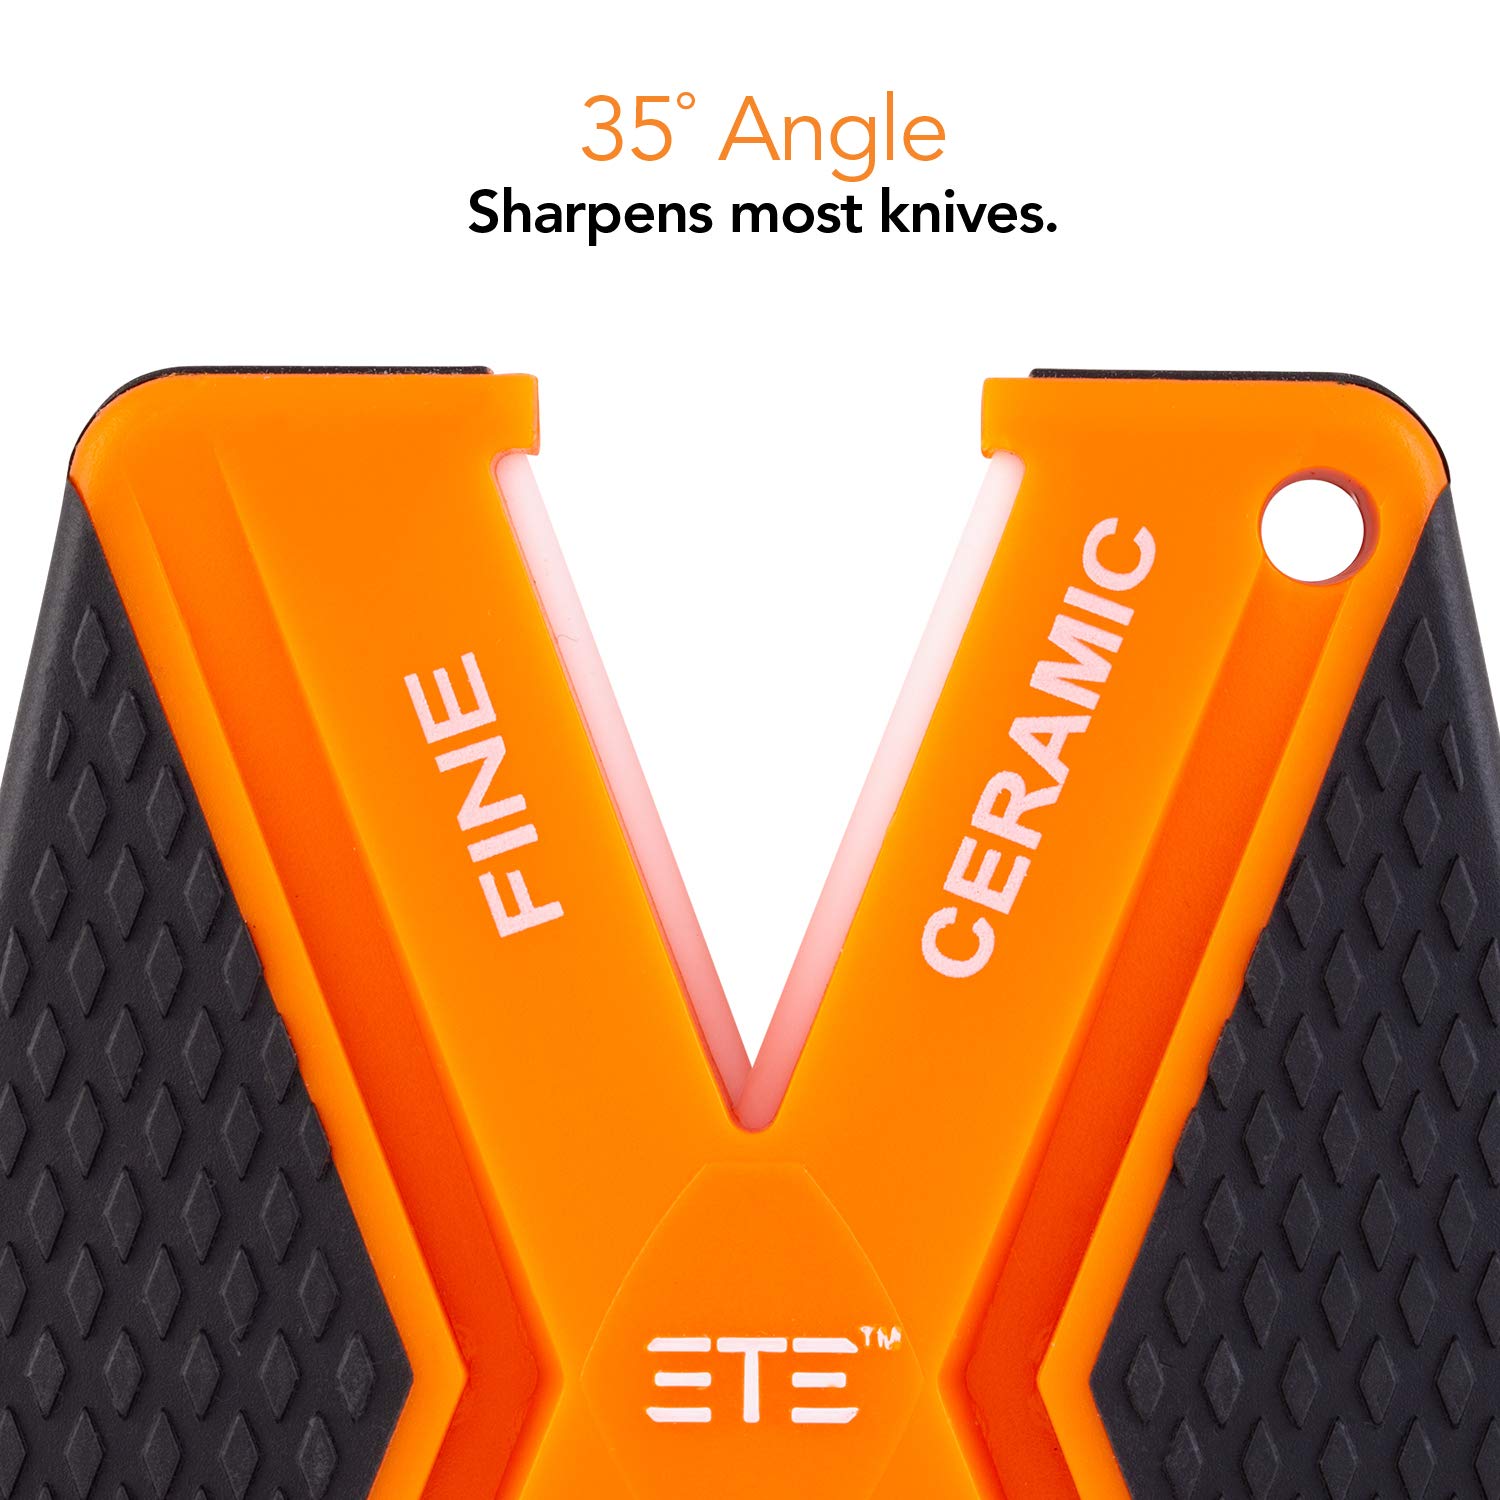 Edge Technology Engineering Double "V" Double Ceramic Knife Sharpener